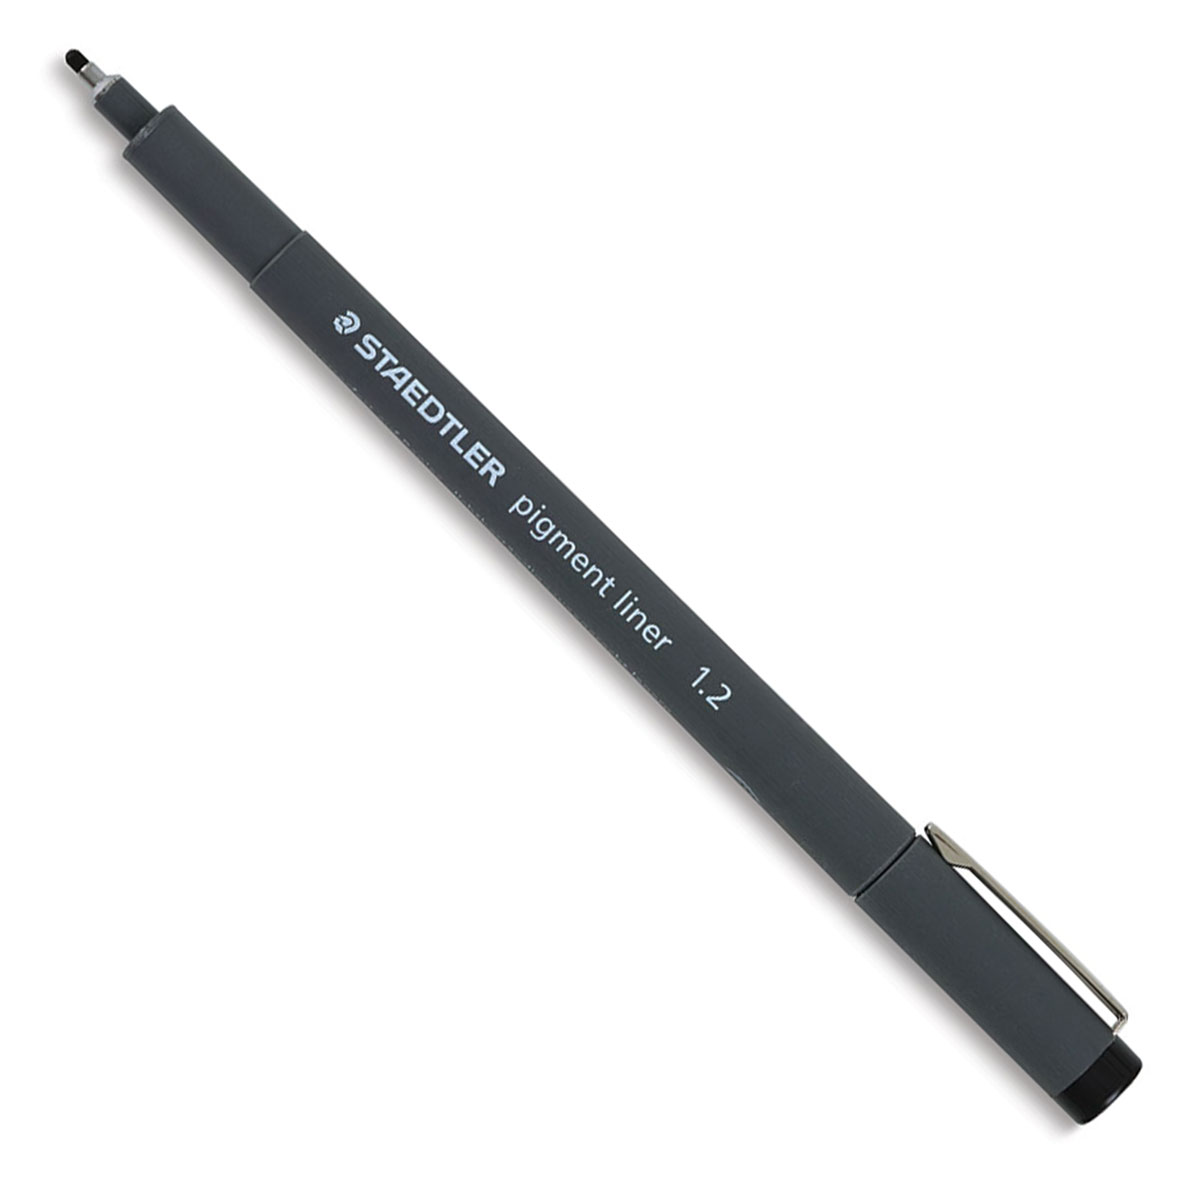 Staedtler Double-Ended Fiber-Tip Pen Sets